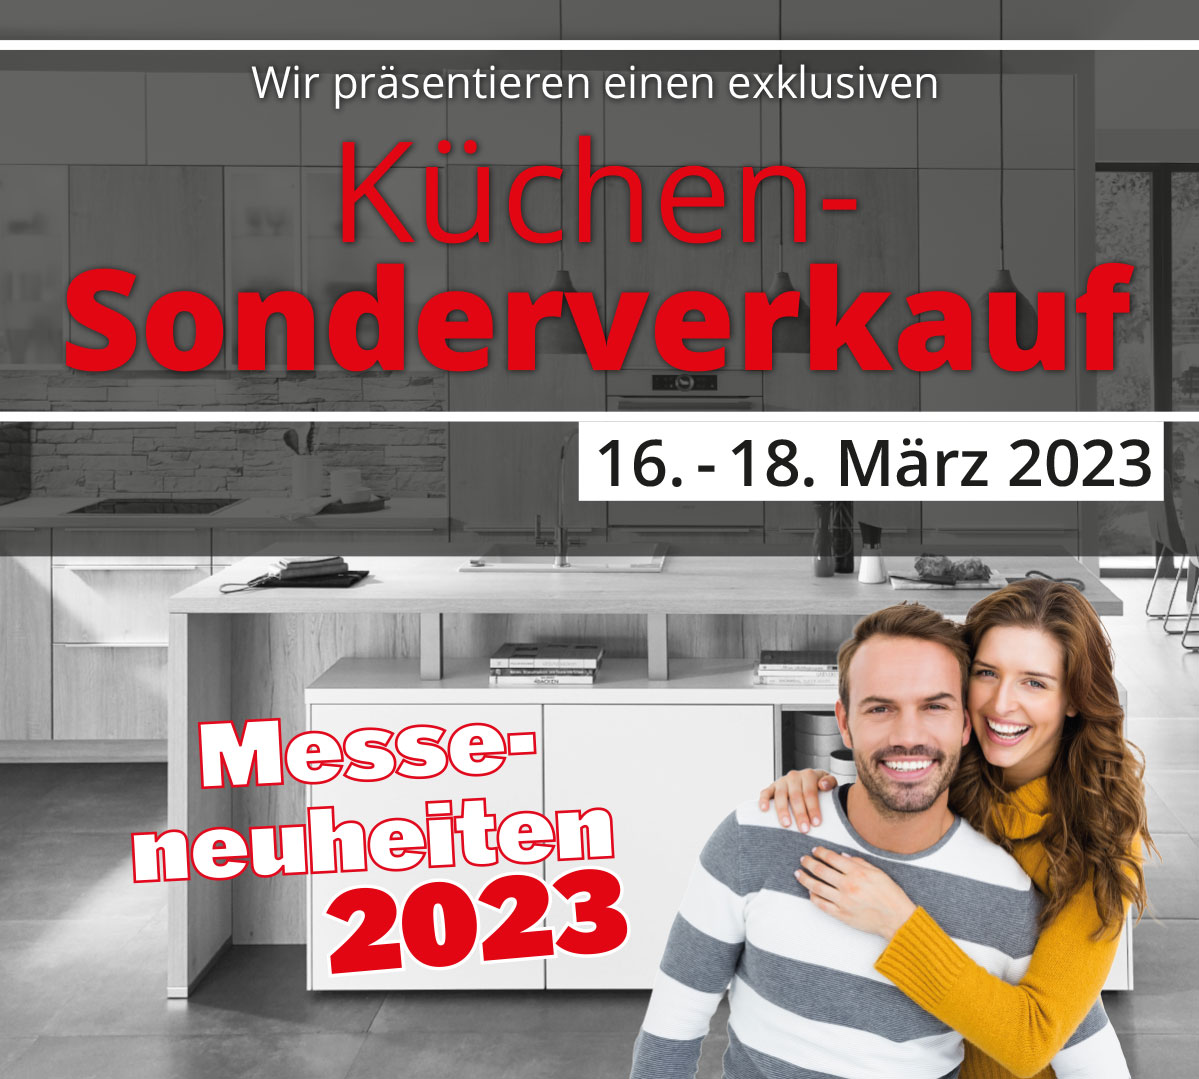 Interliving HEKA präsentiert einen exklusiven Küchen-Sonderverkauf vom 16. - 18. März 2023. Jetzt richtig sparen beim Küchenkauf!